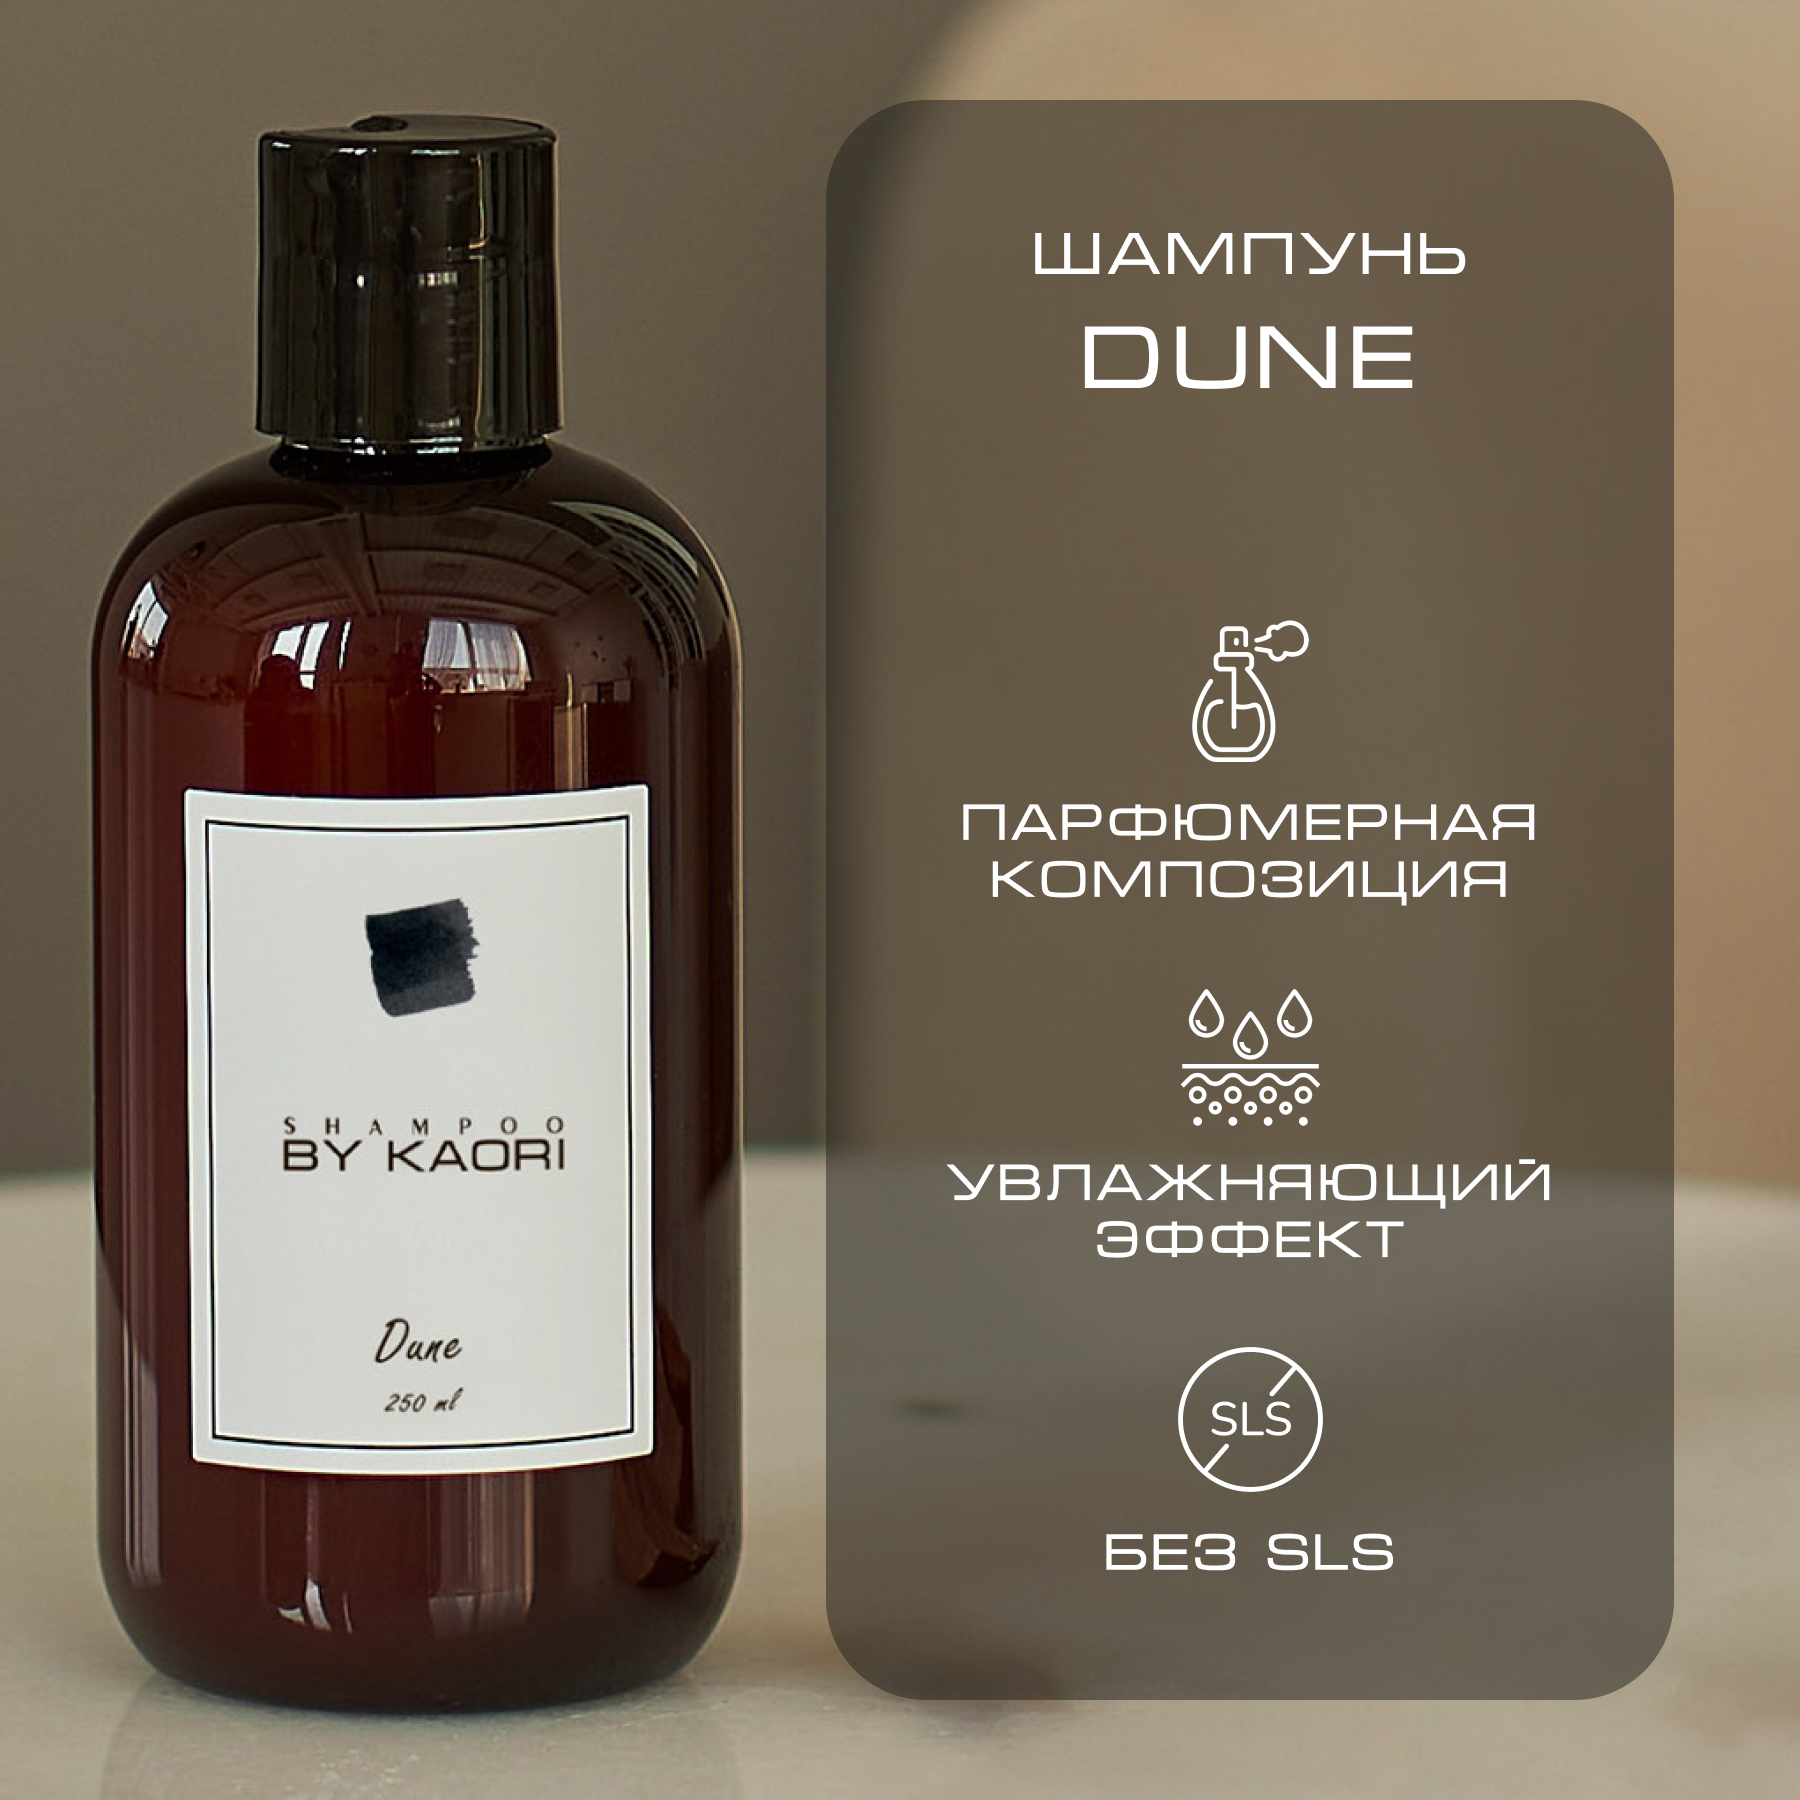 Шампунь для волос By Kaori бессульфатный парфюмированный, аромат Dune 250 мл herbert chapterhouse dune